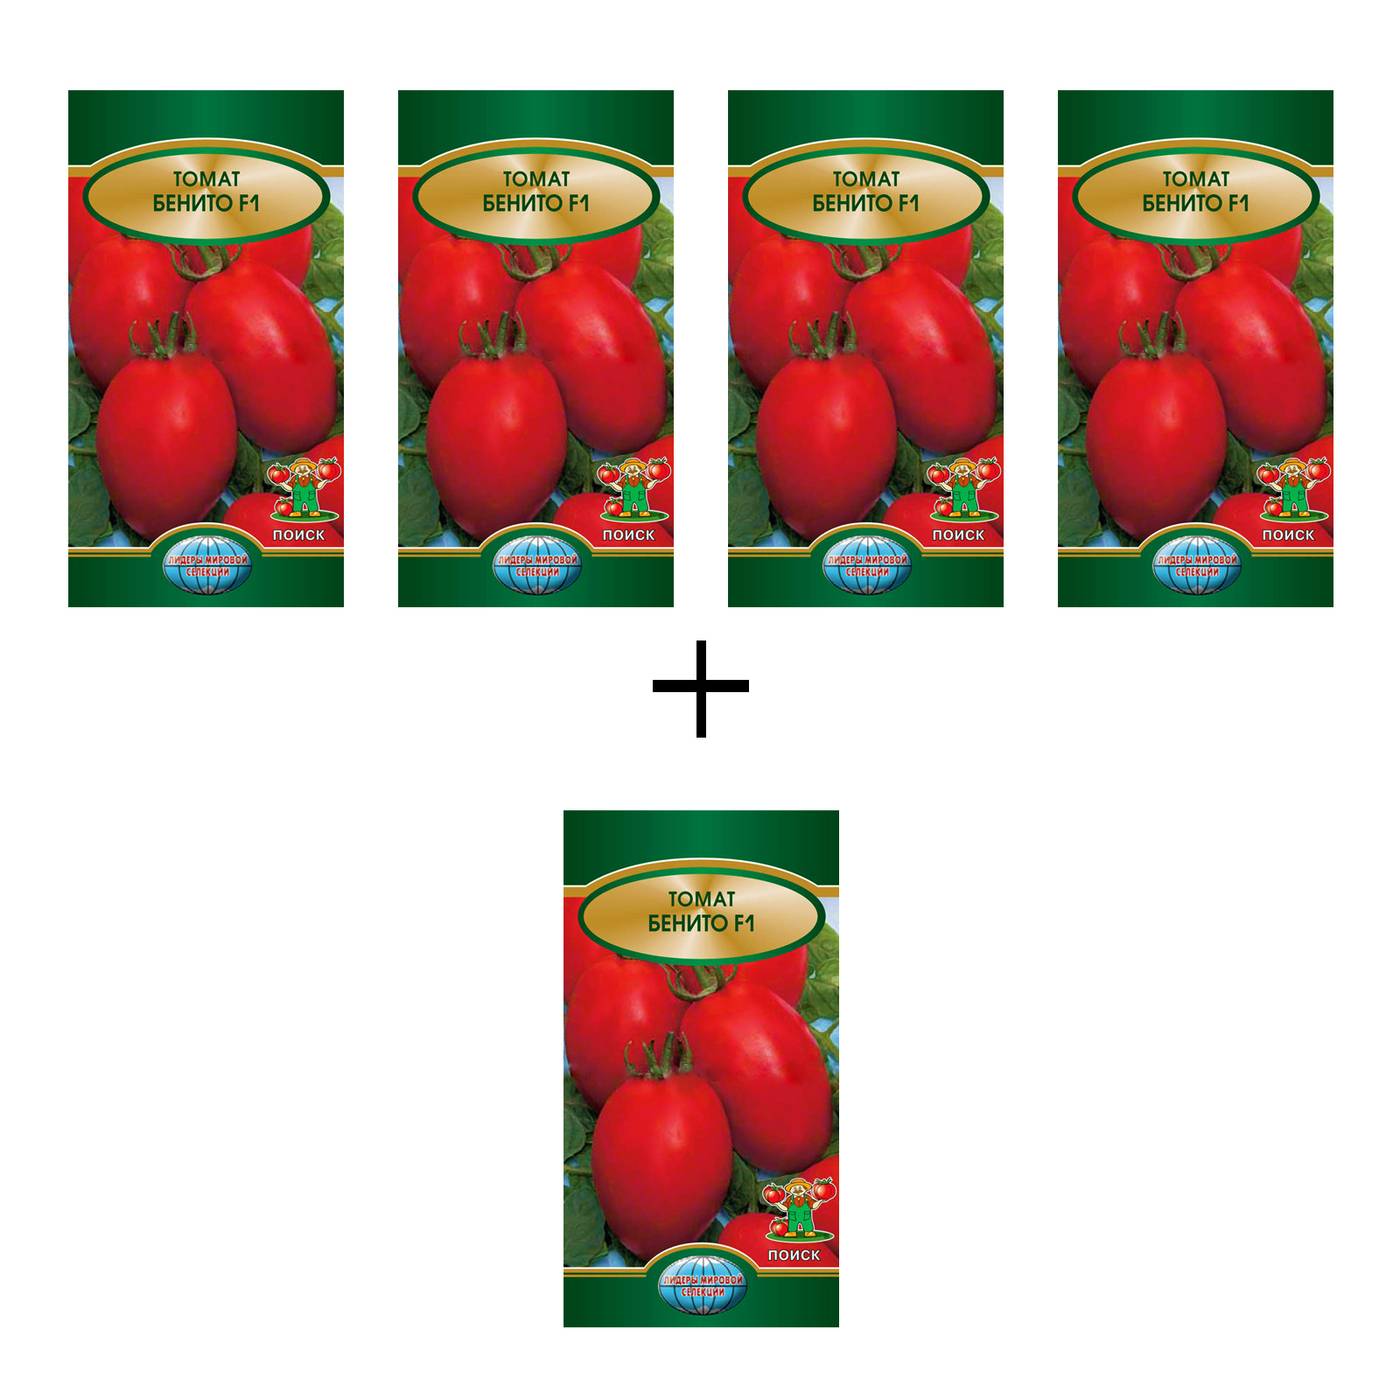 Сорт из голландии используемый в различных странах- томат инкас f1: подробное описание